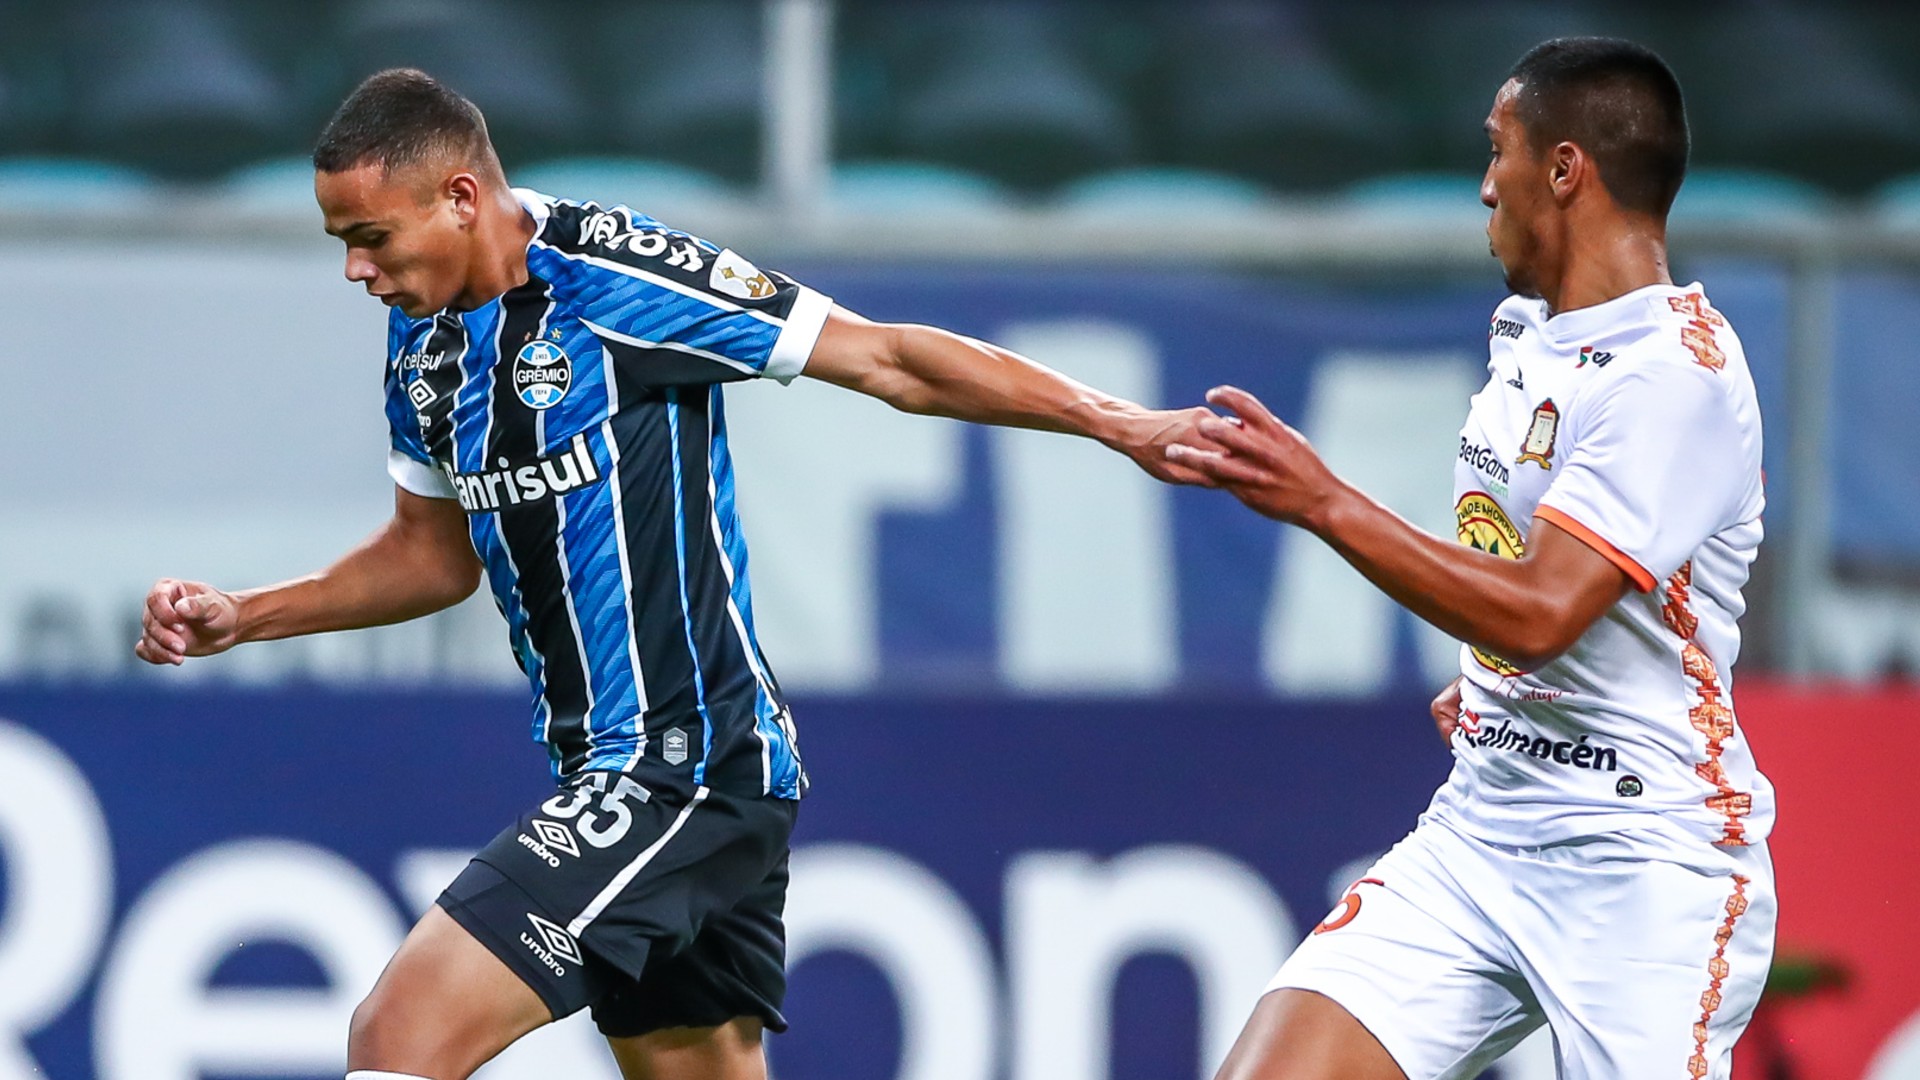 Jogadores do Grêmio e Ayacucho se enfrentaram em campo (Divulgação)